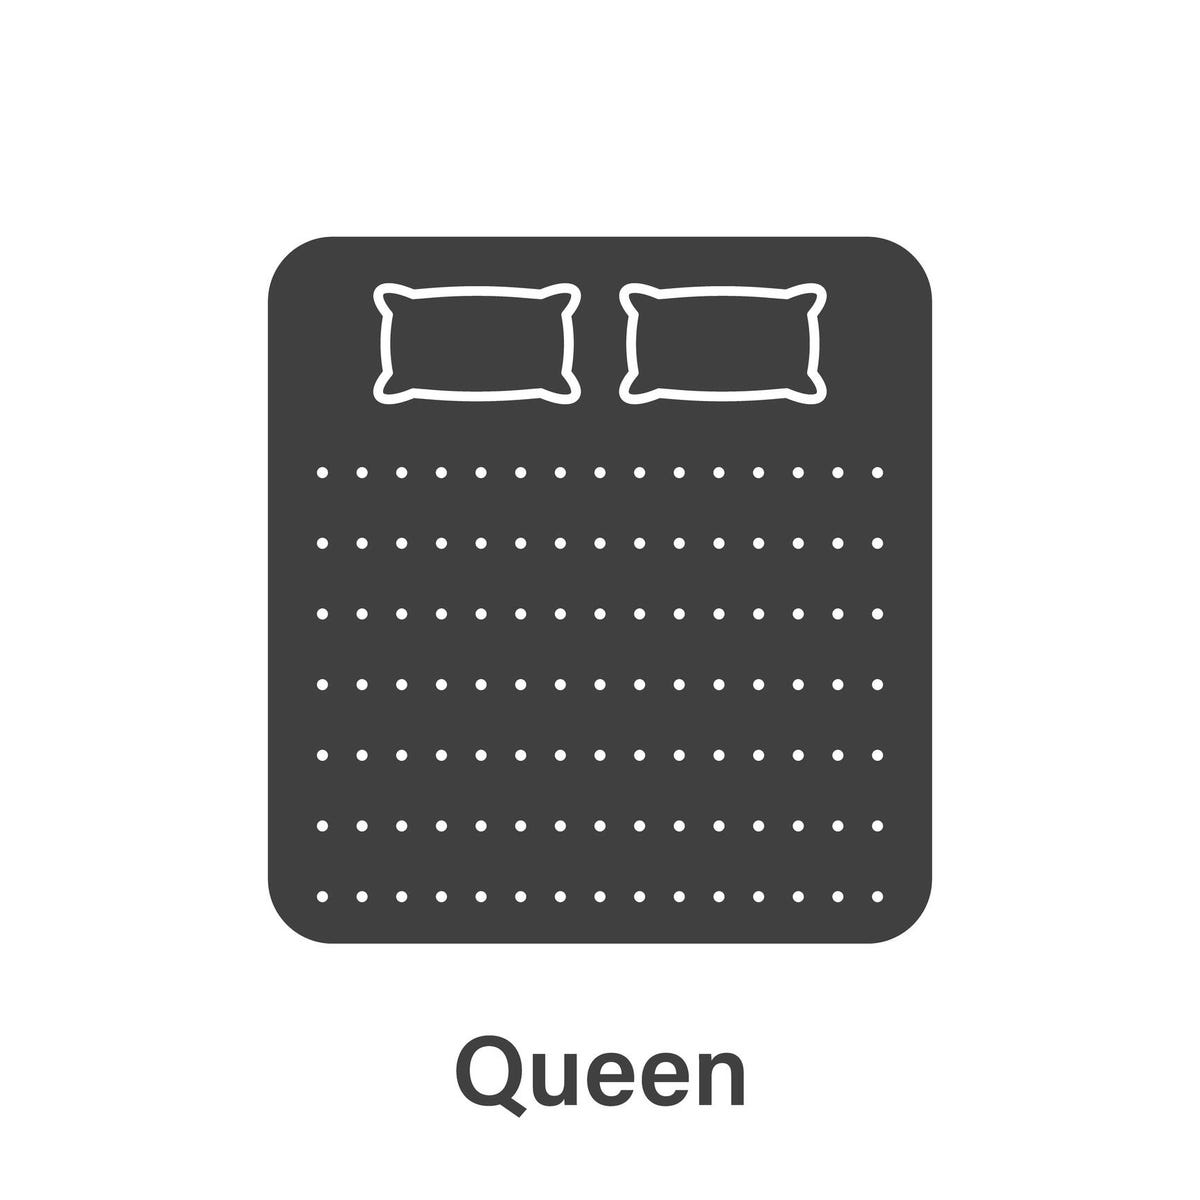 Design of a queen bed.